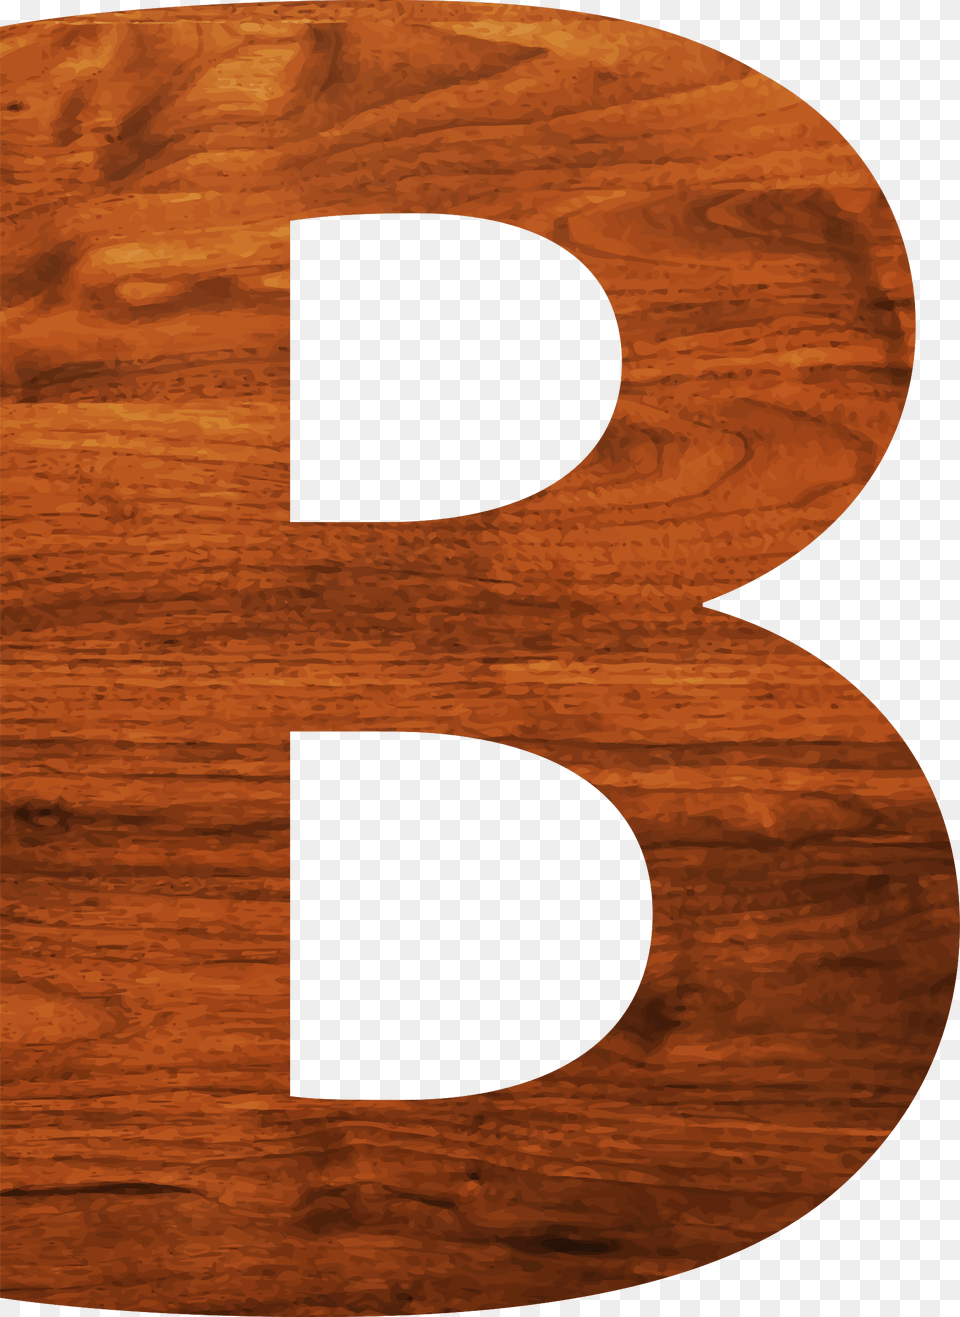 Wood Texture Alphabet B Alphabet B Of Wood Texture, Hardwood, Text, Number, Symbol Free Transparent Png